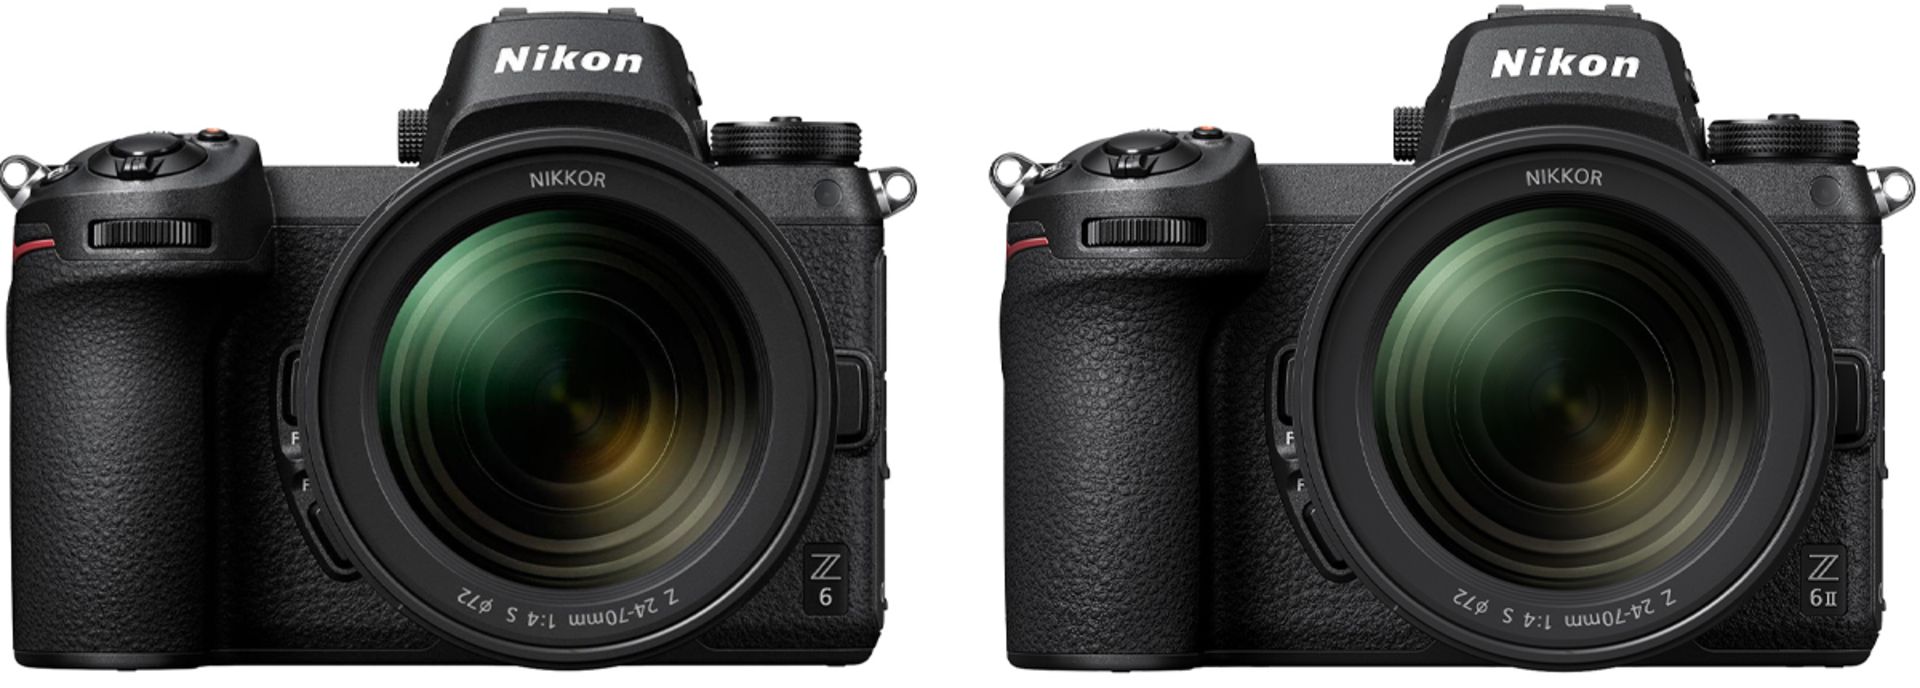 مرجع متخصصين ايران دوربين نيكون Nikon Z6 II در كنار نيكون زد ۶ معمولي